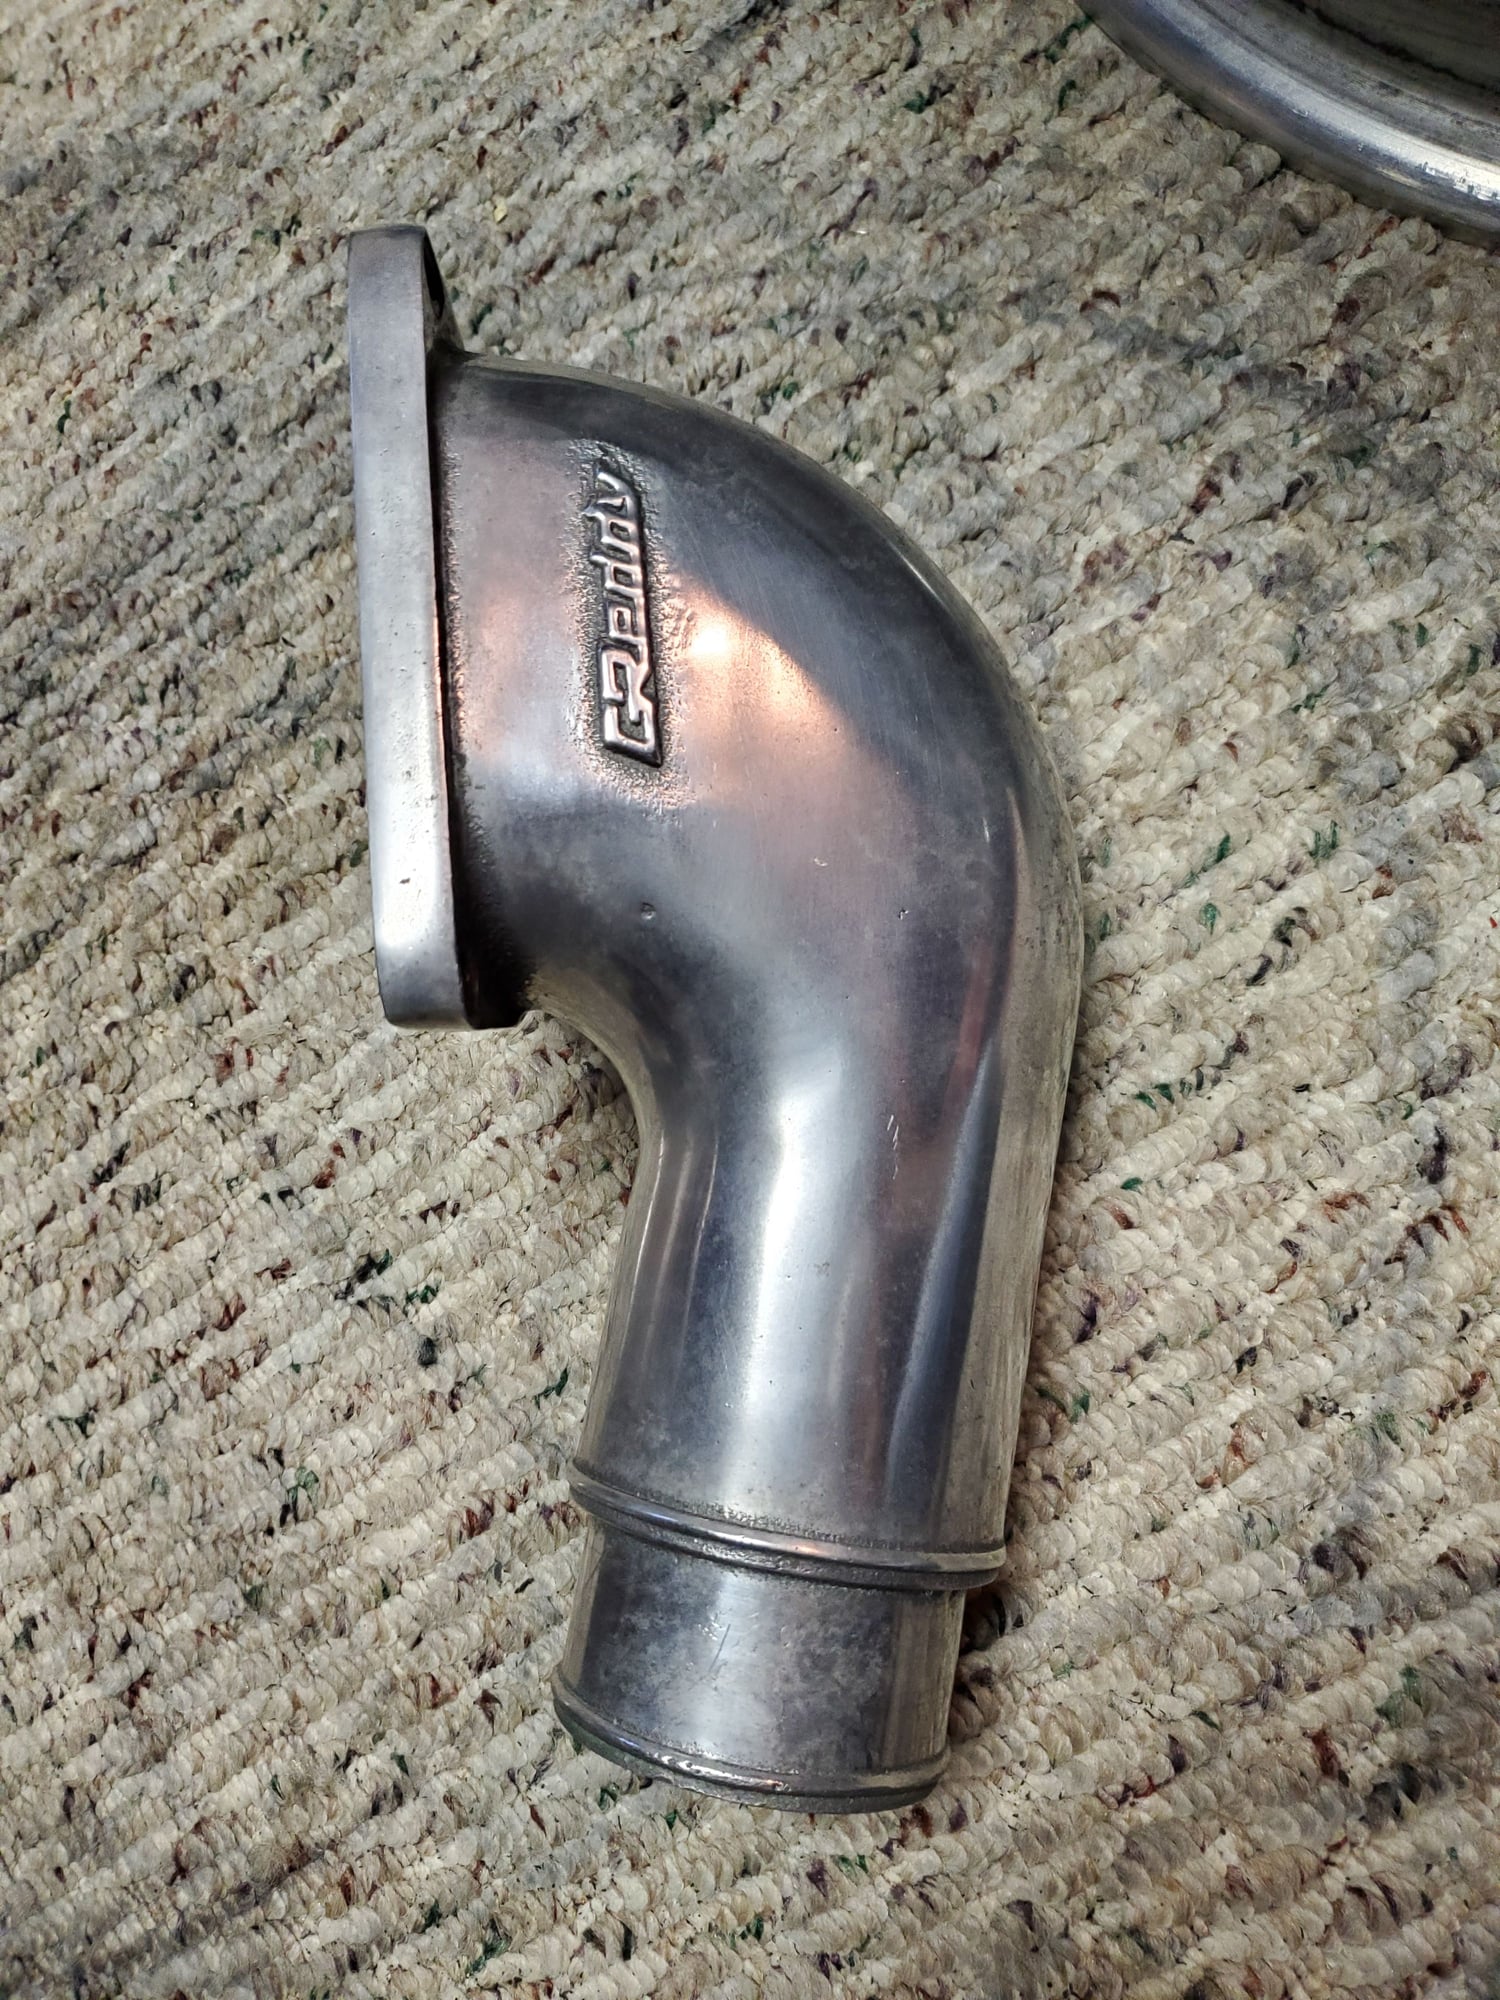 Accessories - Greddy compression elbow - Used - 1993 to 2002 Mazda RX-7 - Cambridge, MA 02138, United States